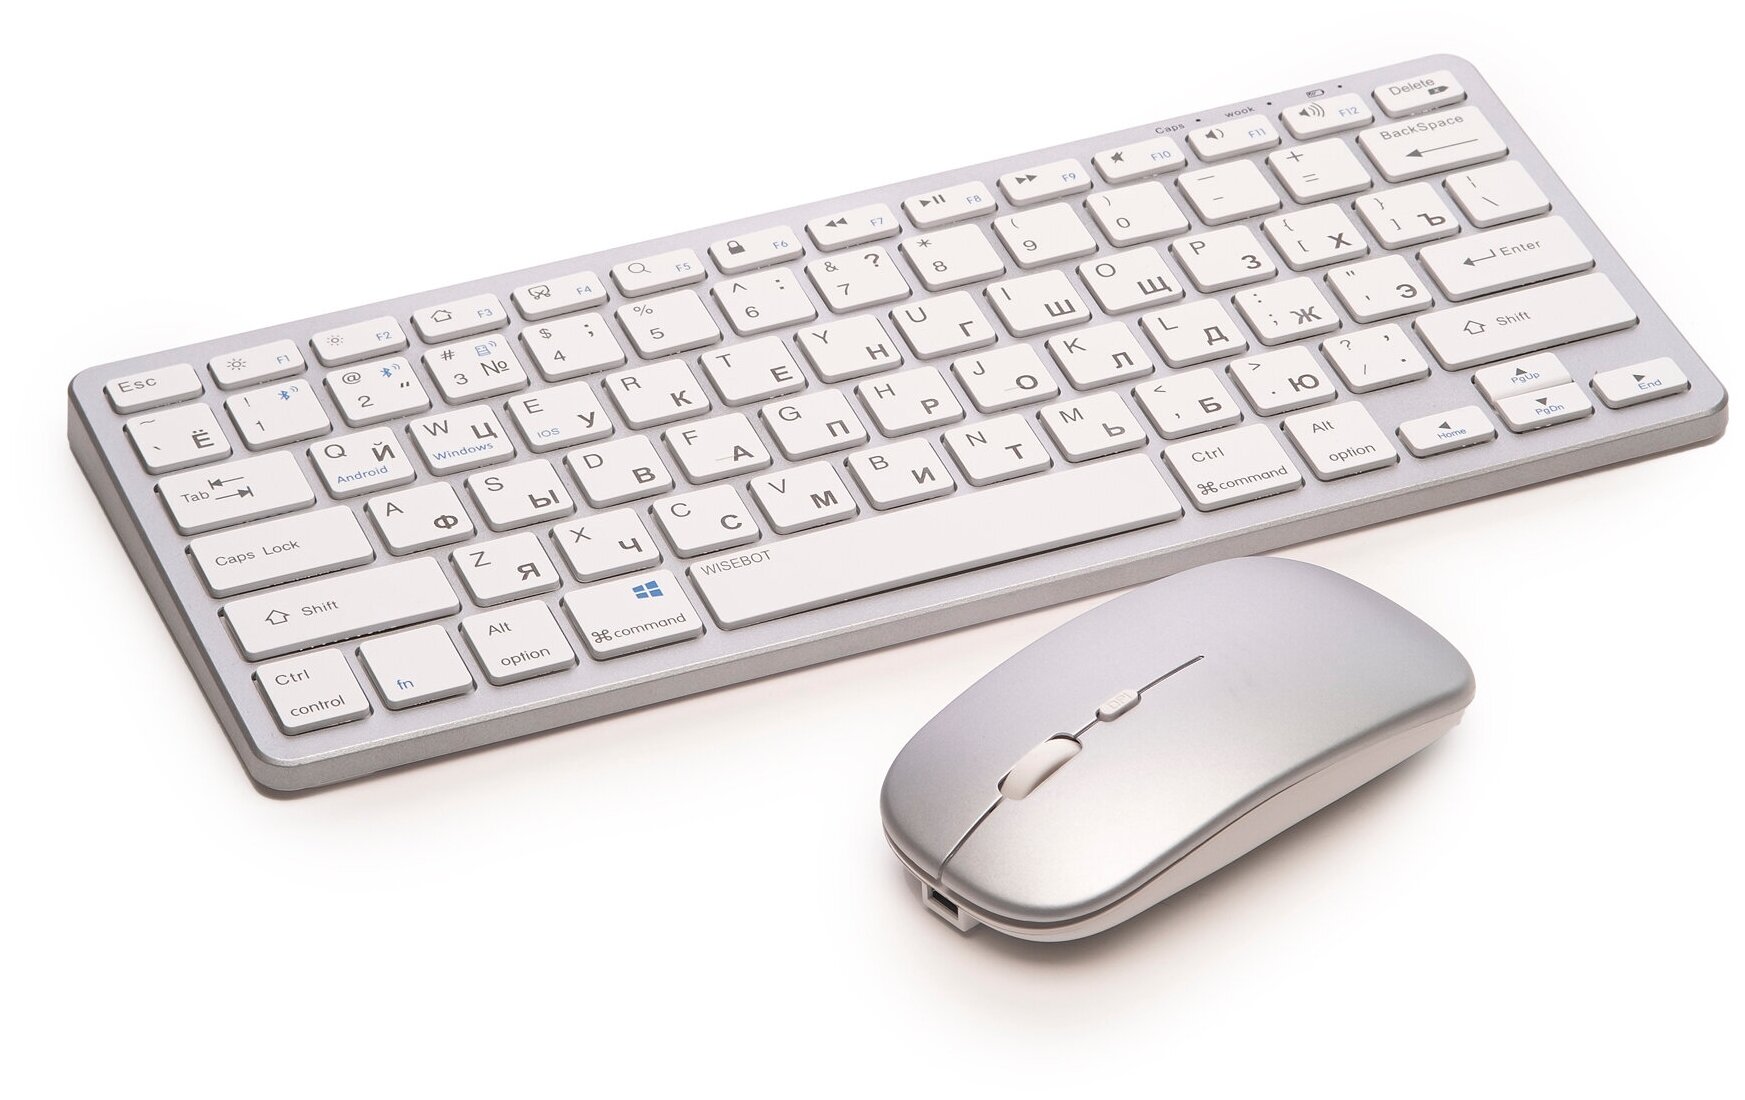 Клавиатура и мышь беспроводная, перезаряжаемая, подключение через блютус или USB-приемник, черная